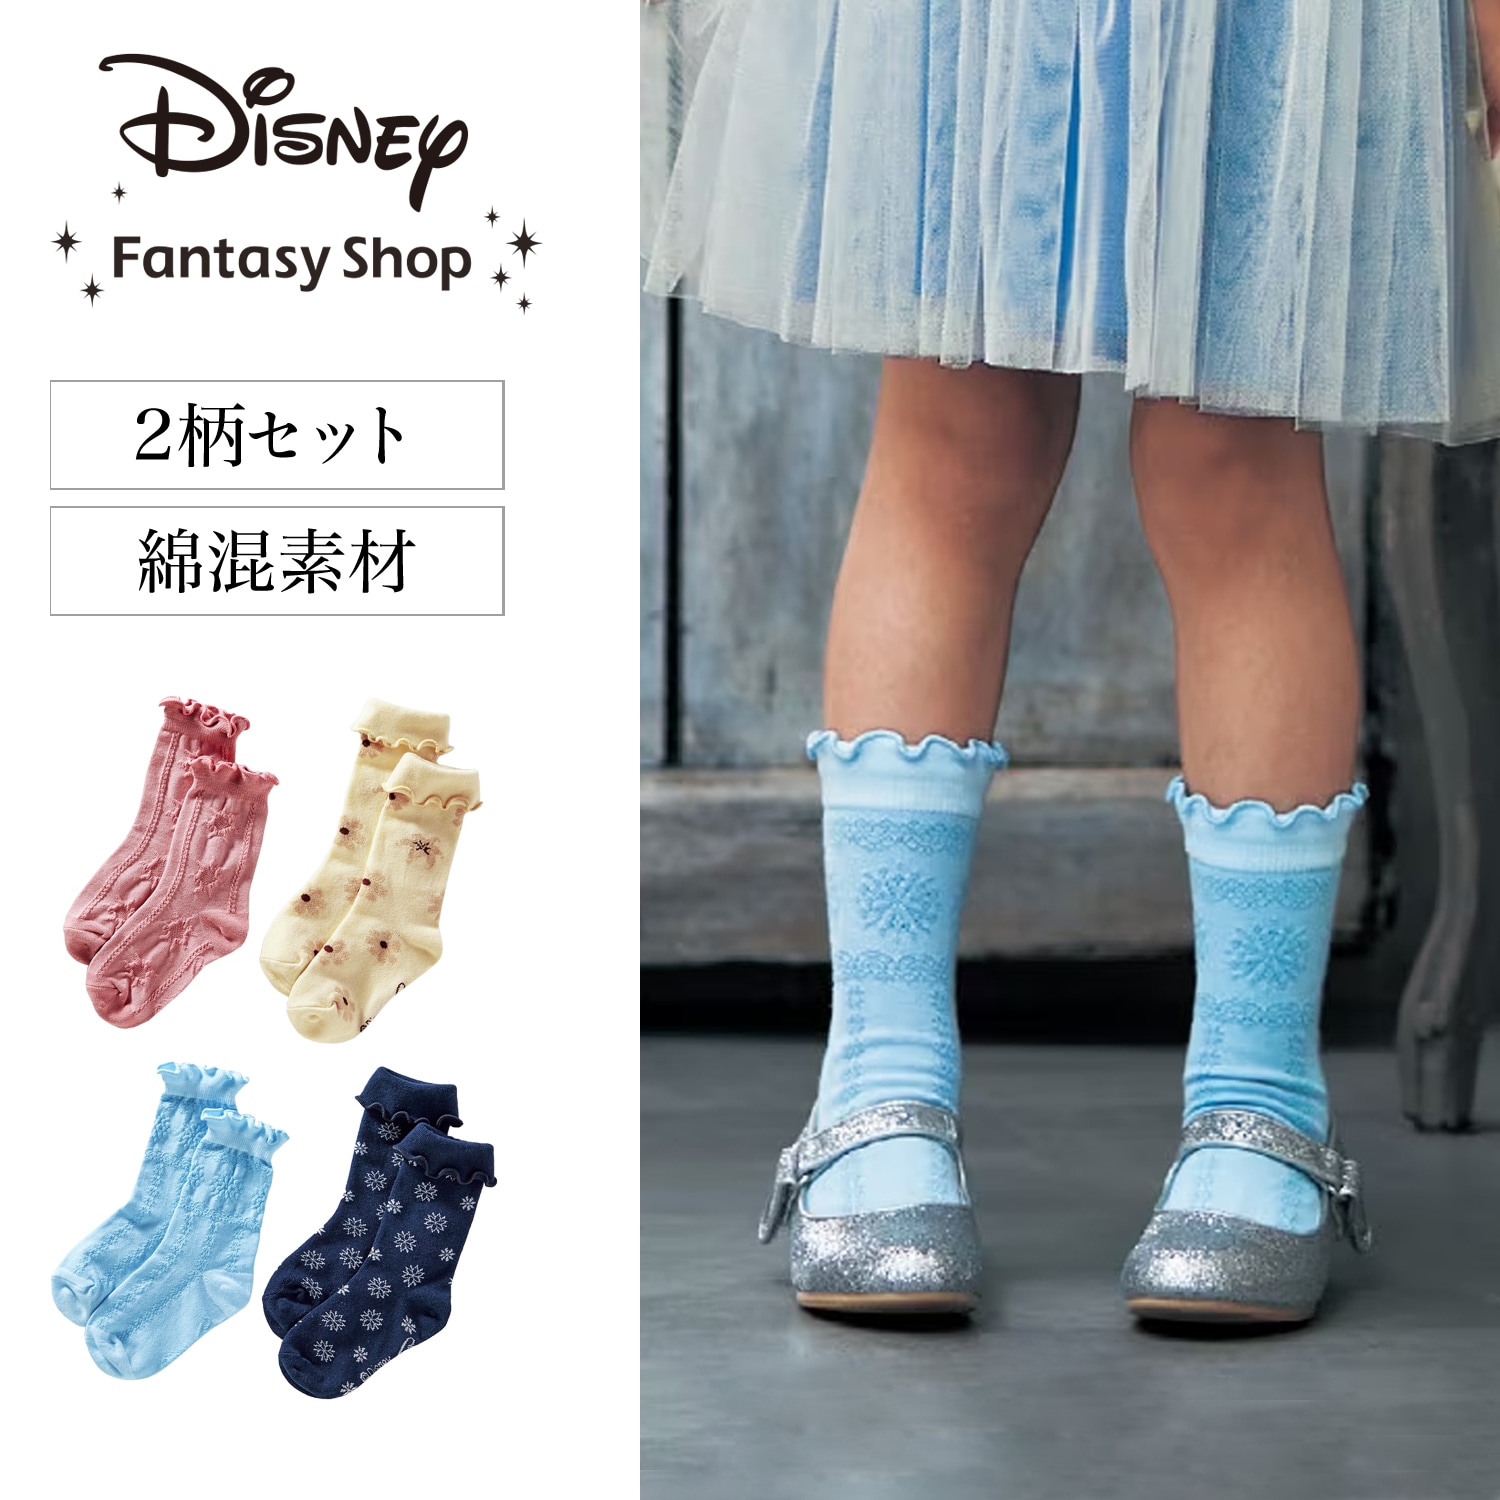 【ディズニー/Disney】ヒロイン気分の靴下2足セット(選べるキャラクター)画像